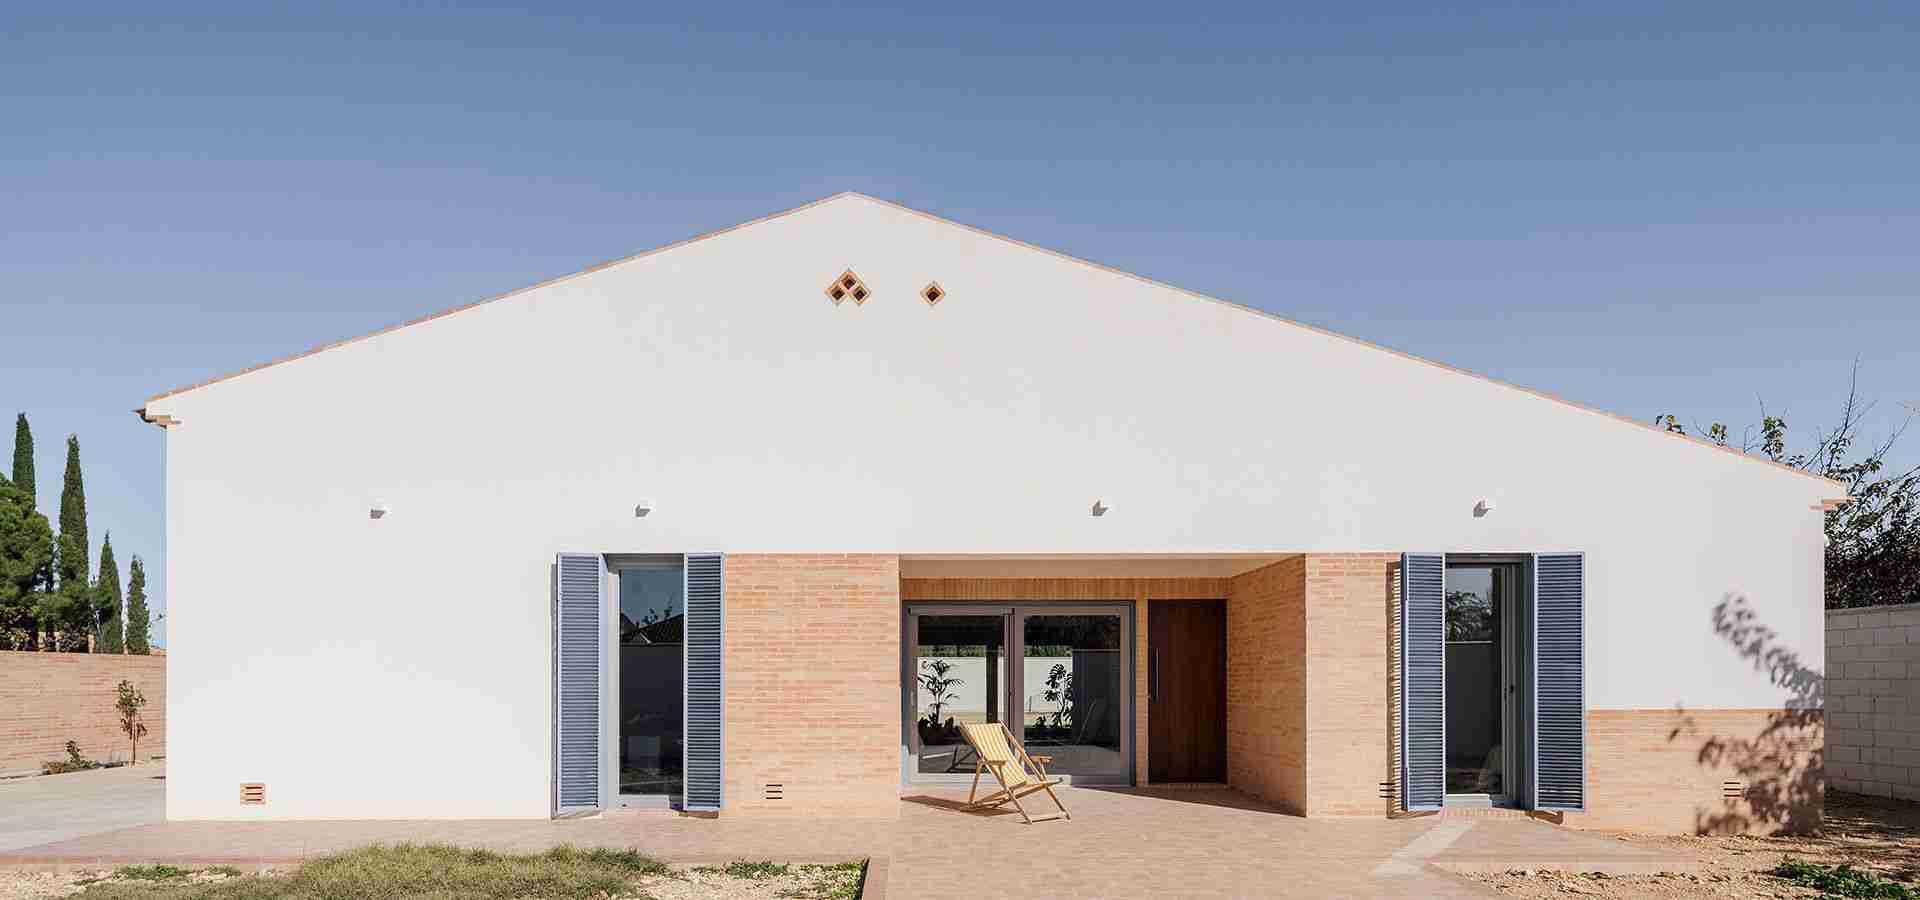 Casa JA!, en Albacete, Premio COACM Emergente para arquitectos menores de 40 años 2